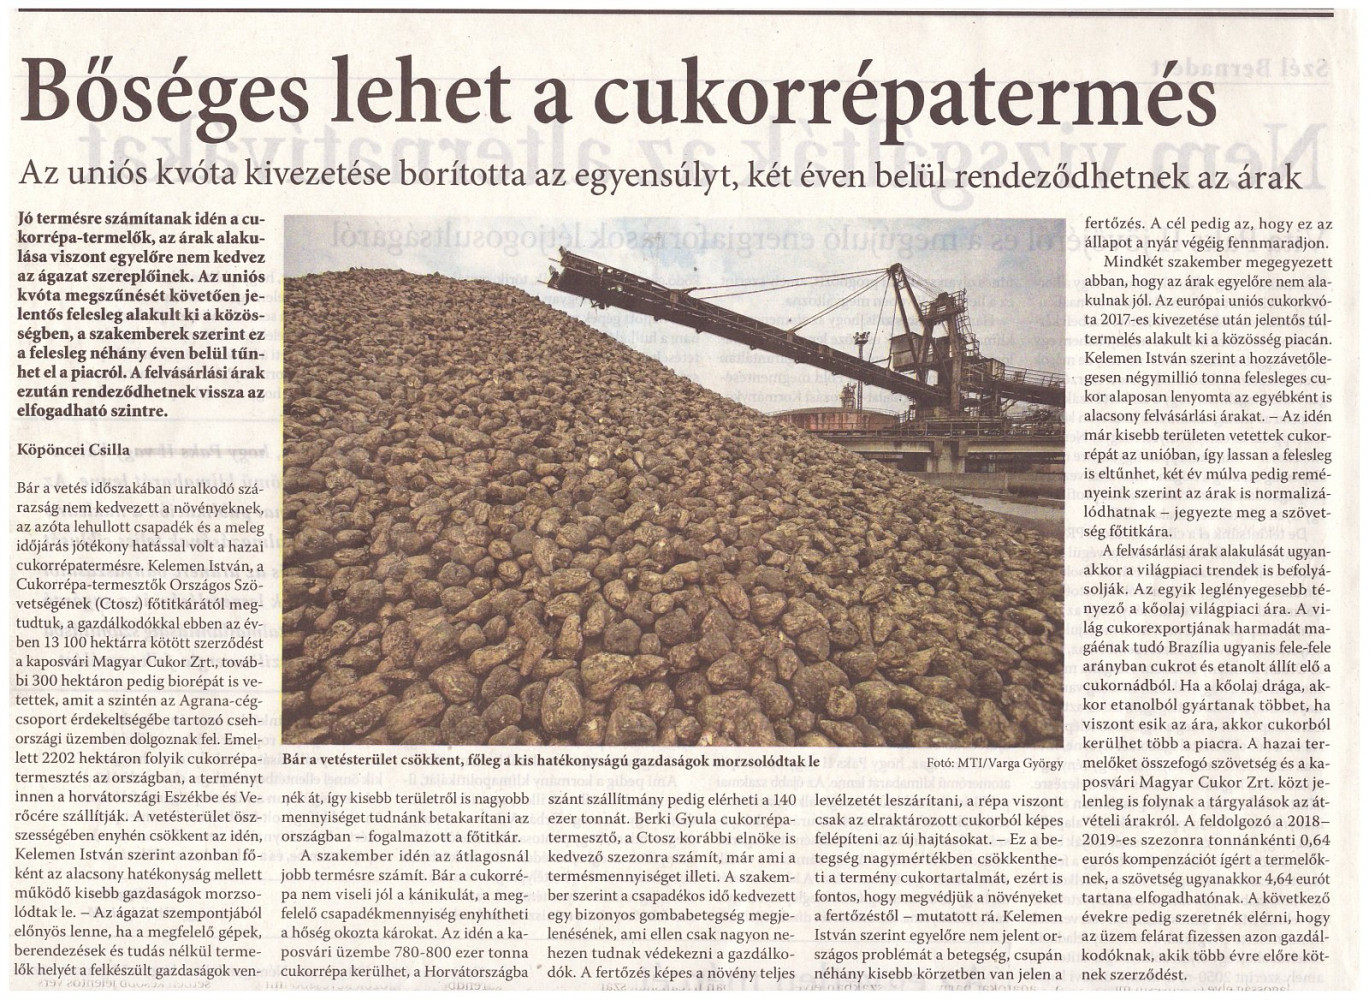 Magyar Nemzet cikke a cukorrépa termesztésről